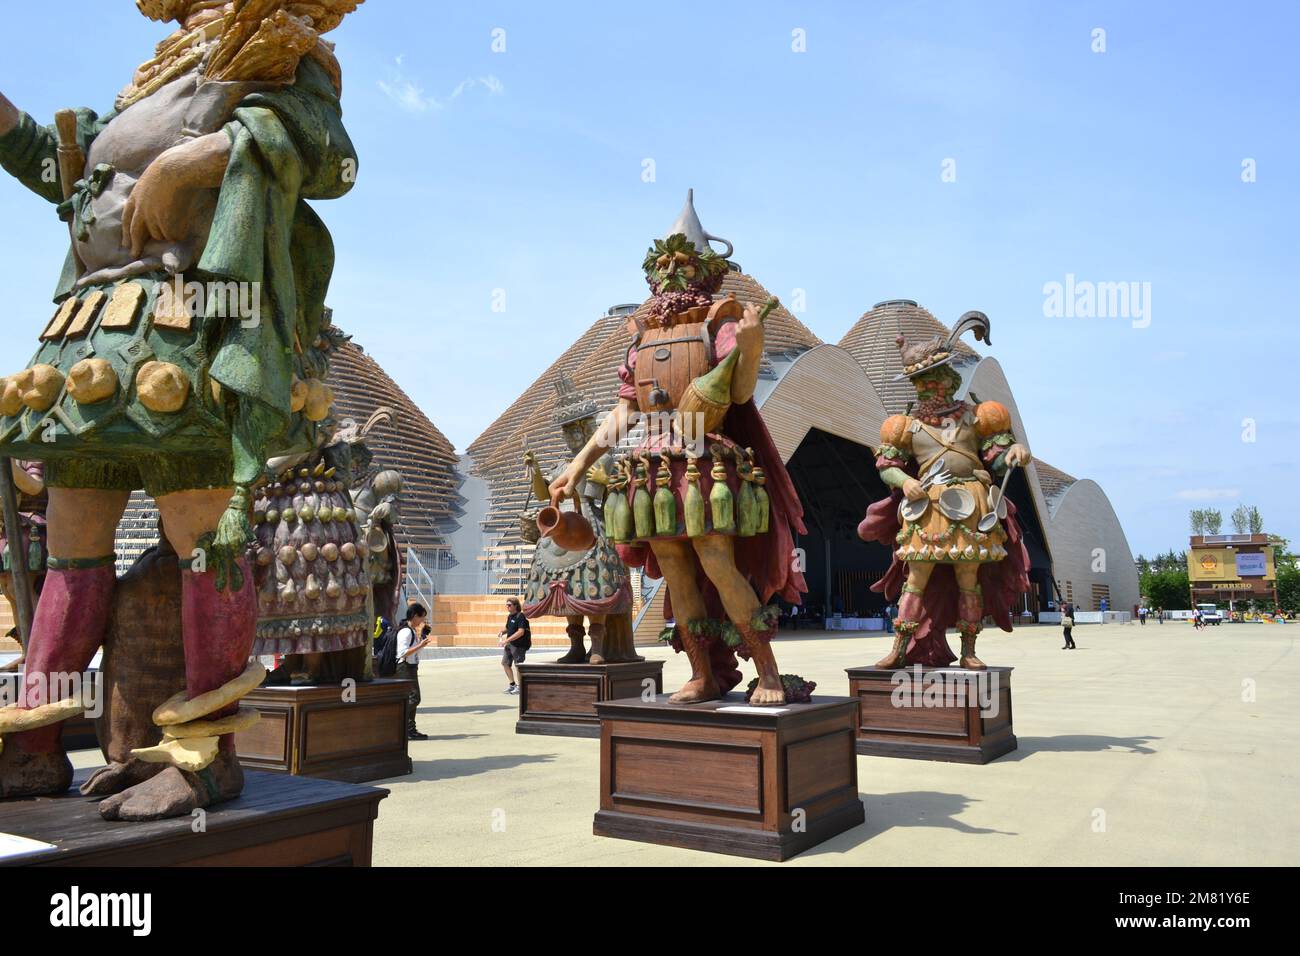 Statues des gens de l'alimentation par Dante Ferretti placé à l'entrée de l'Expo Milano 2015. Allégorie universelle des emplois créés pour nourrir les gens. Nourriture. Banque D'Images